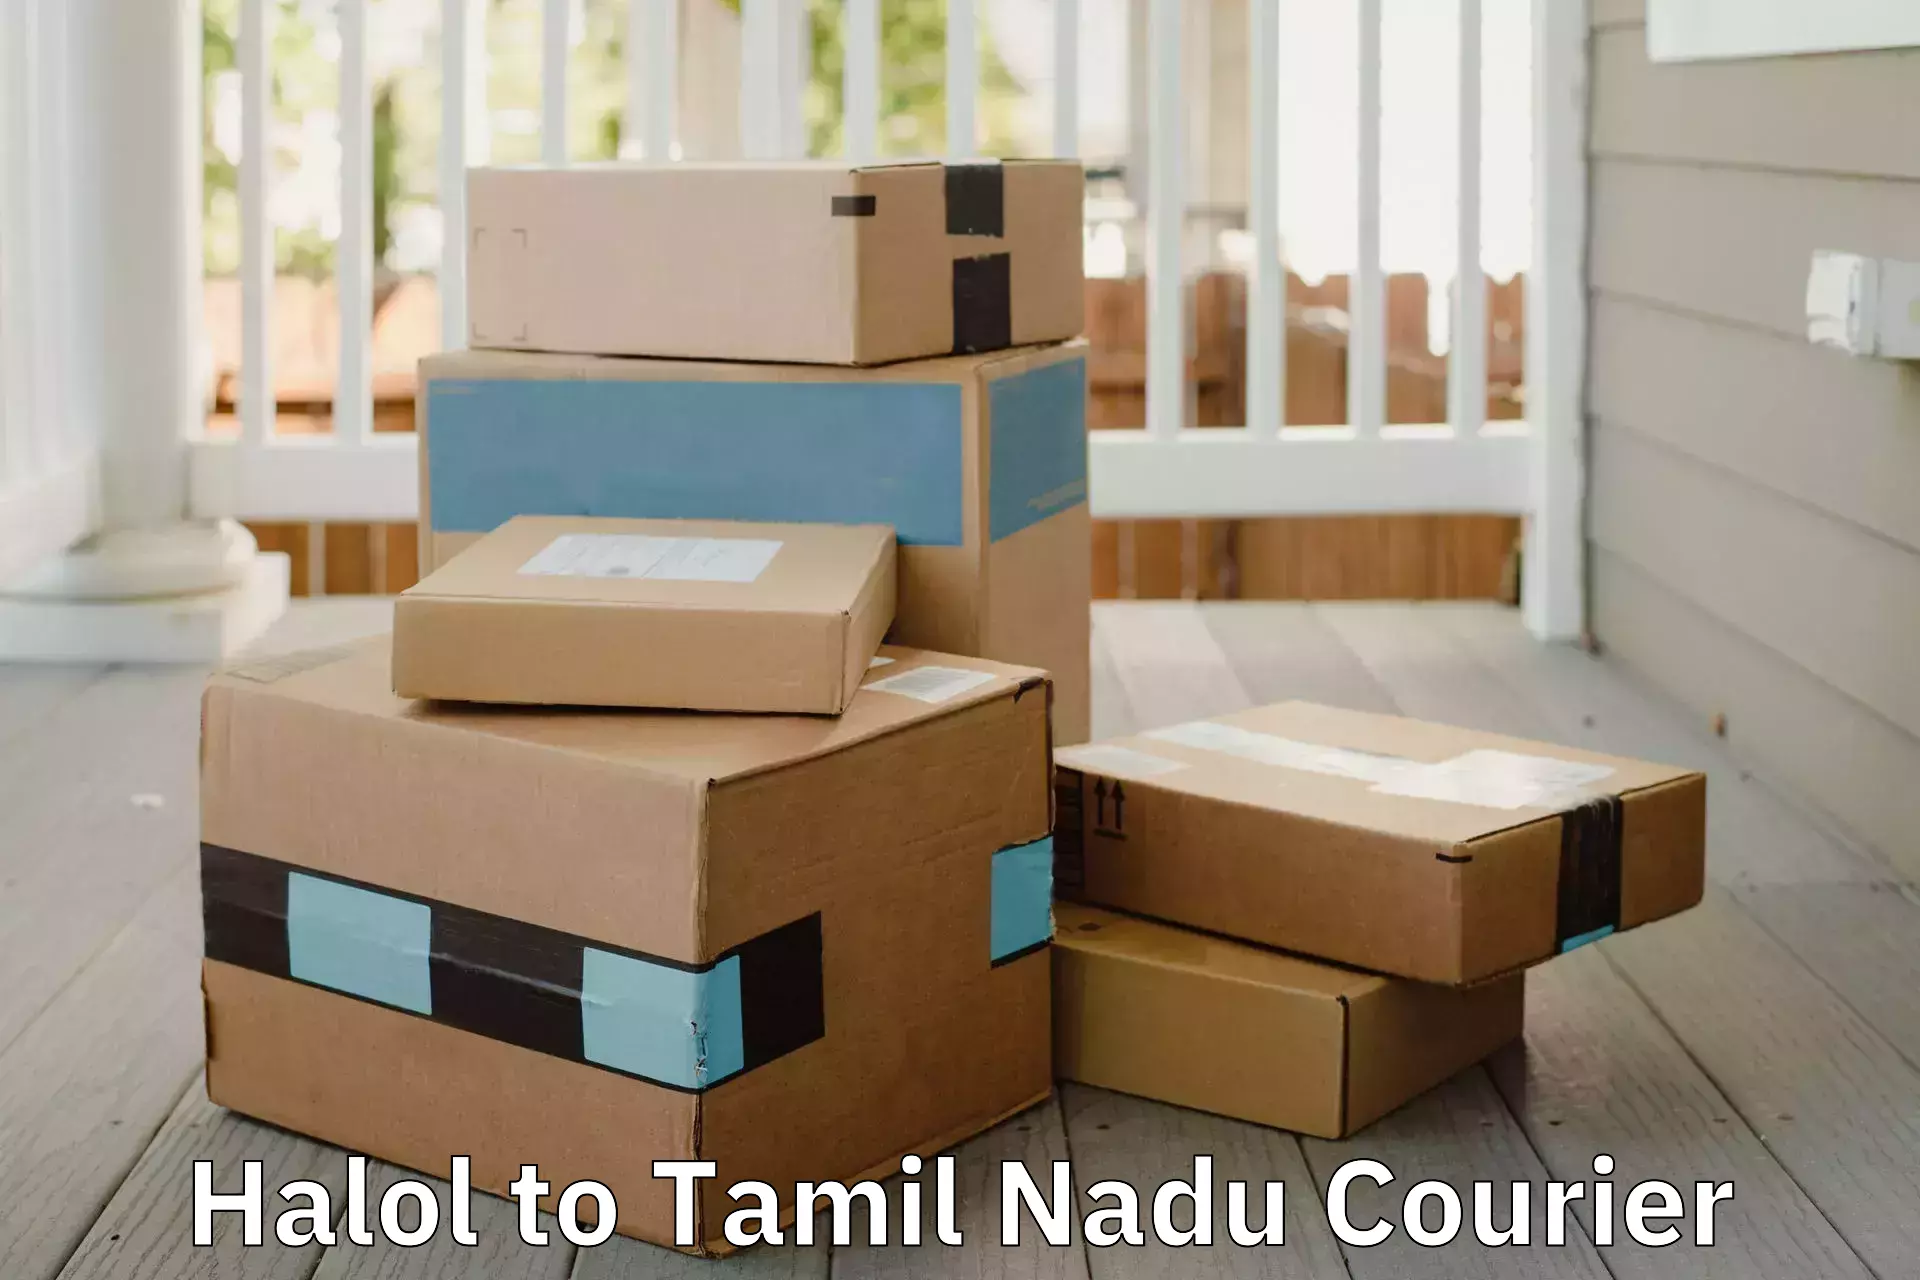 Efficient moving and packing Halol to Periyakulam